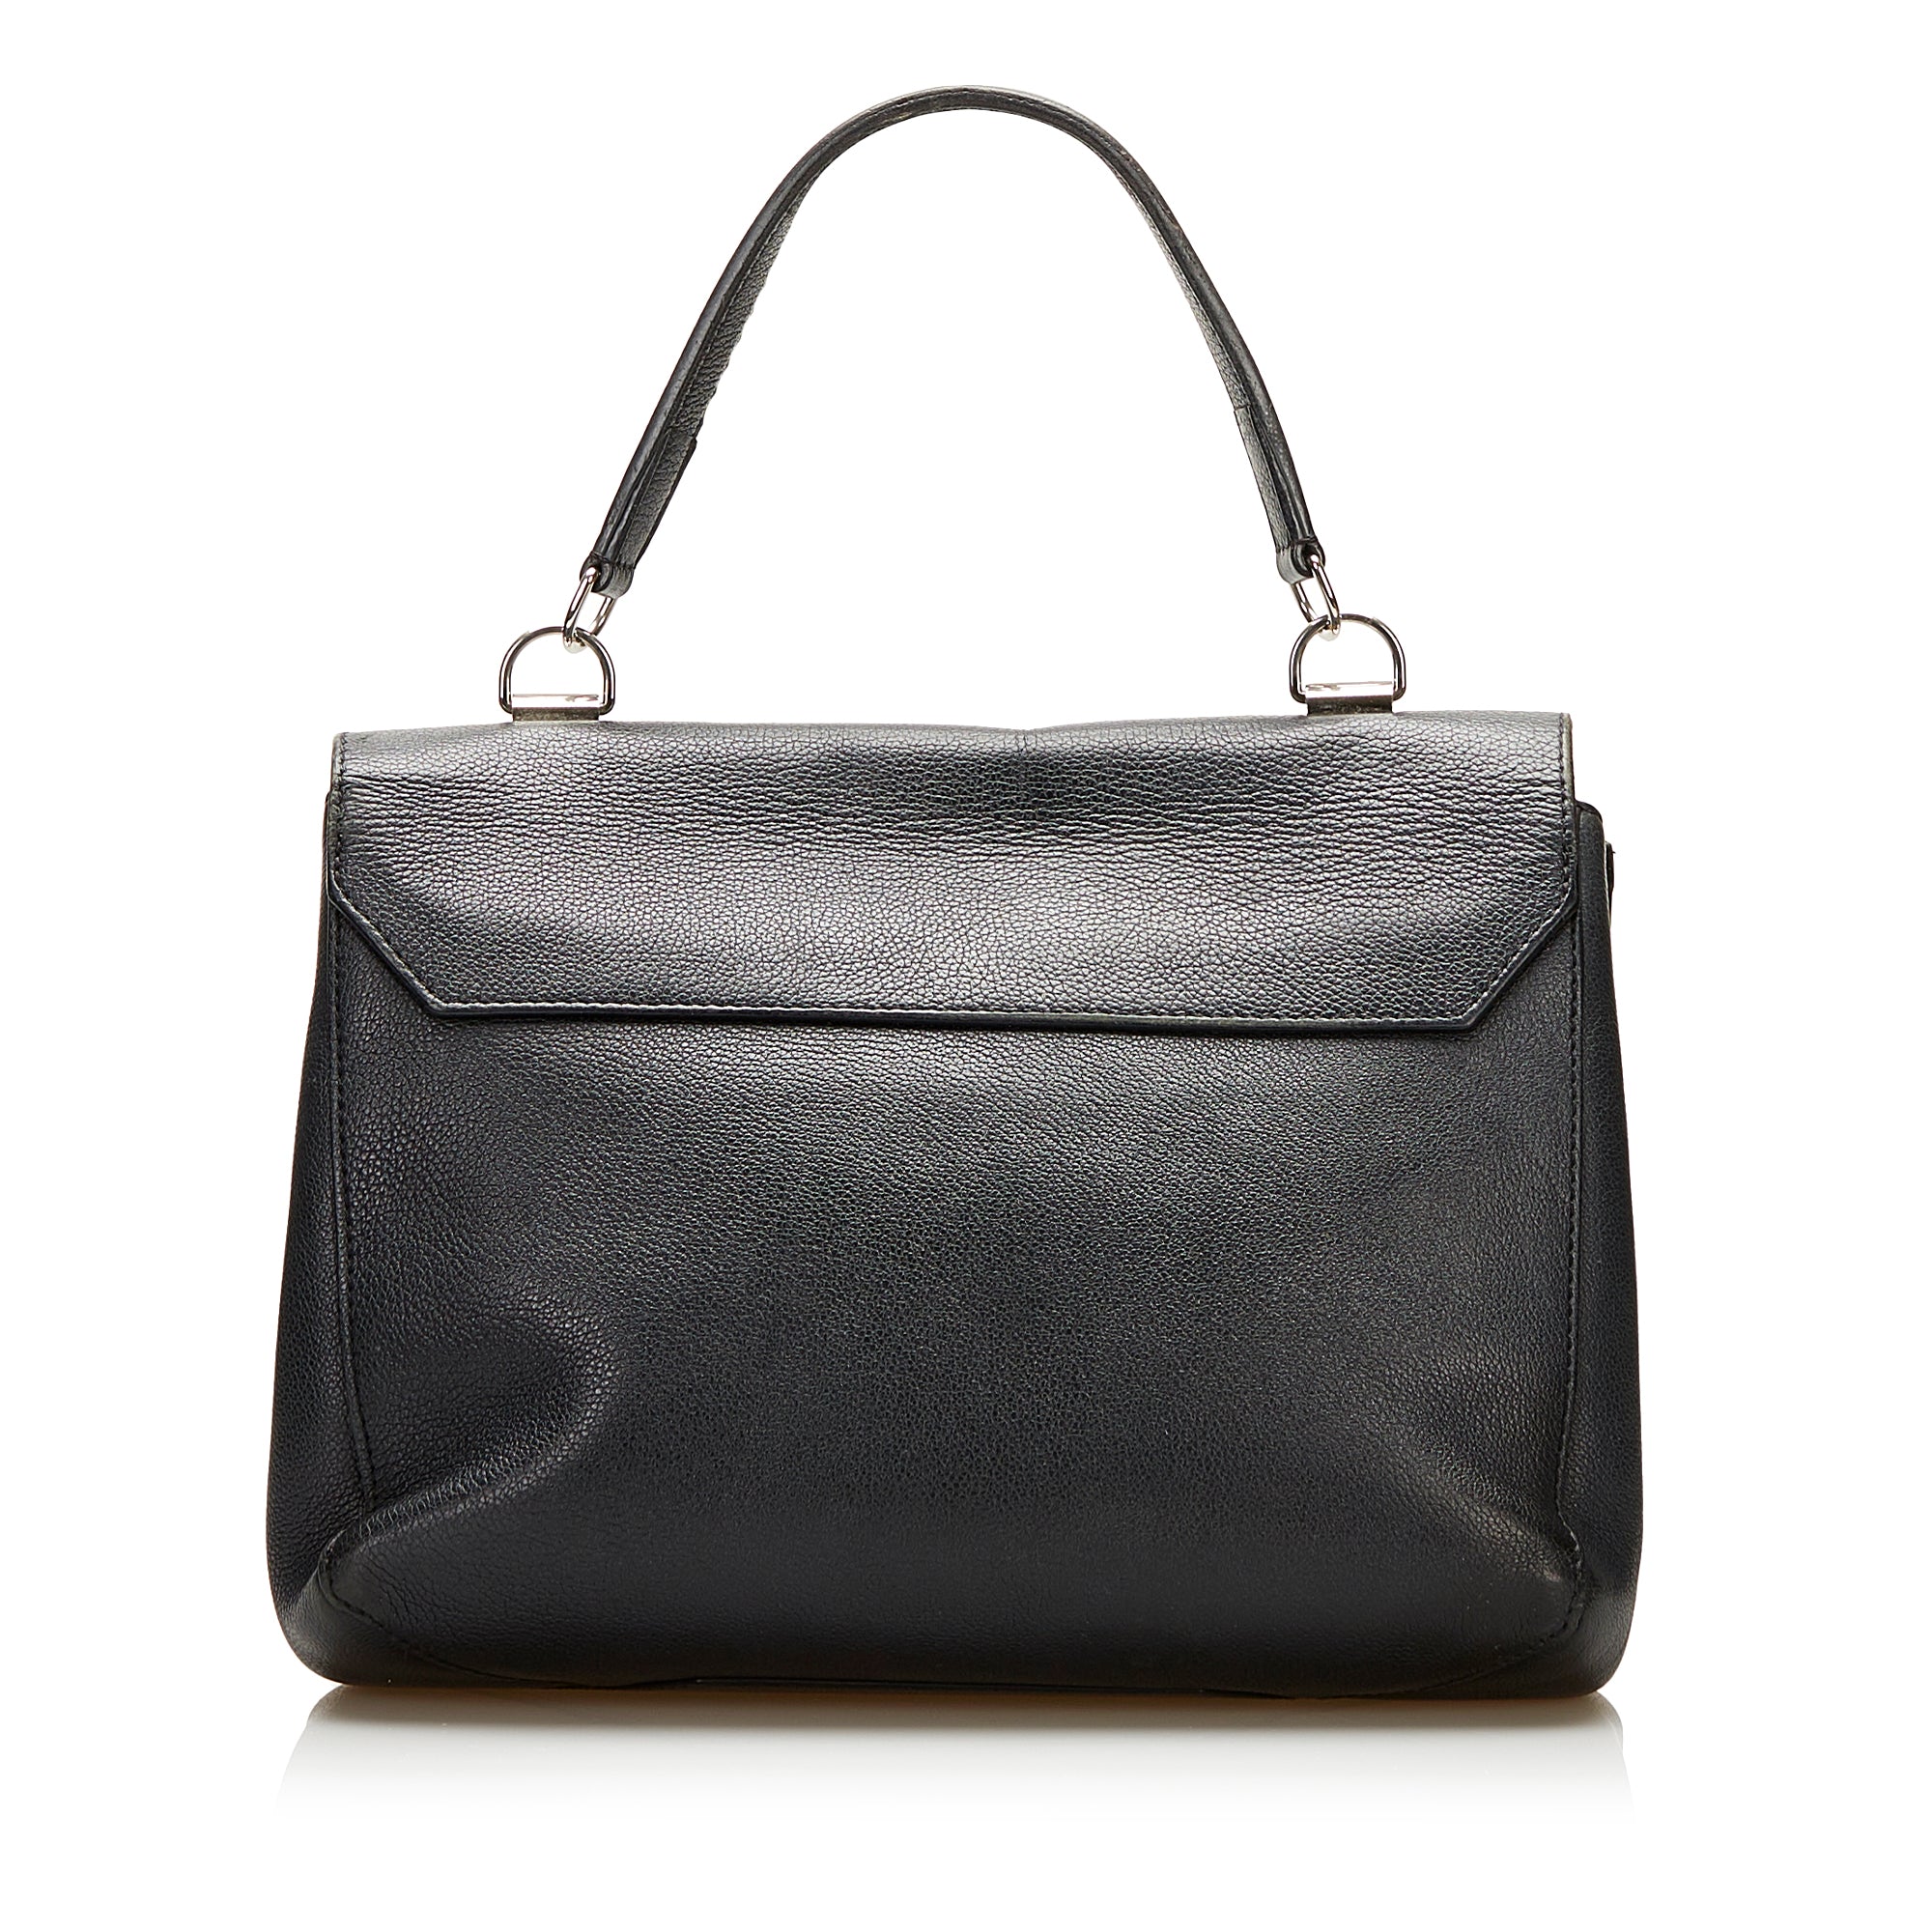 Longchamp Madeleine Black Leather Top Handle Satchel Shoulder Bag